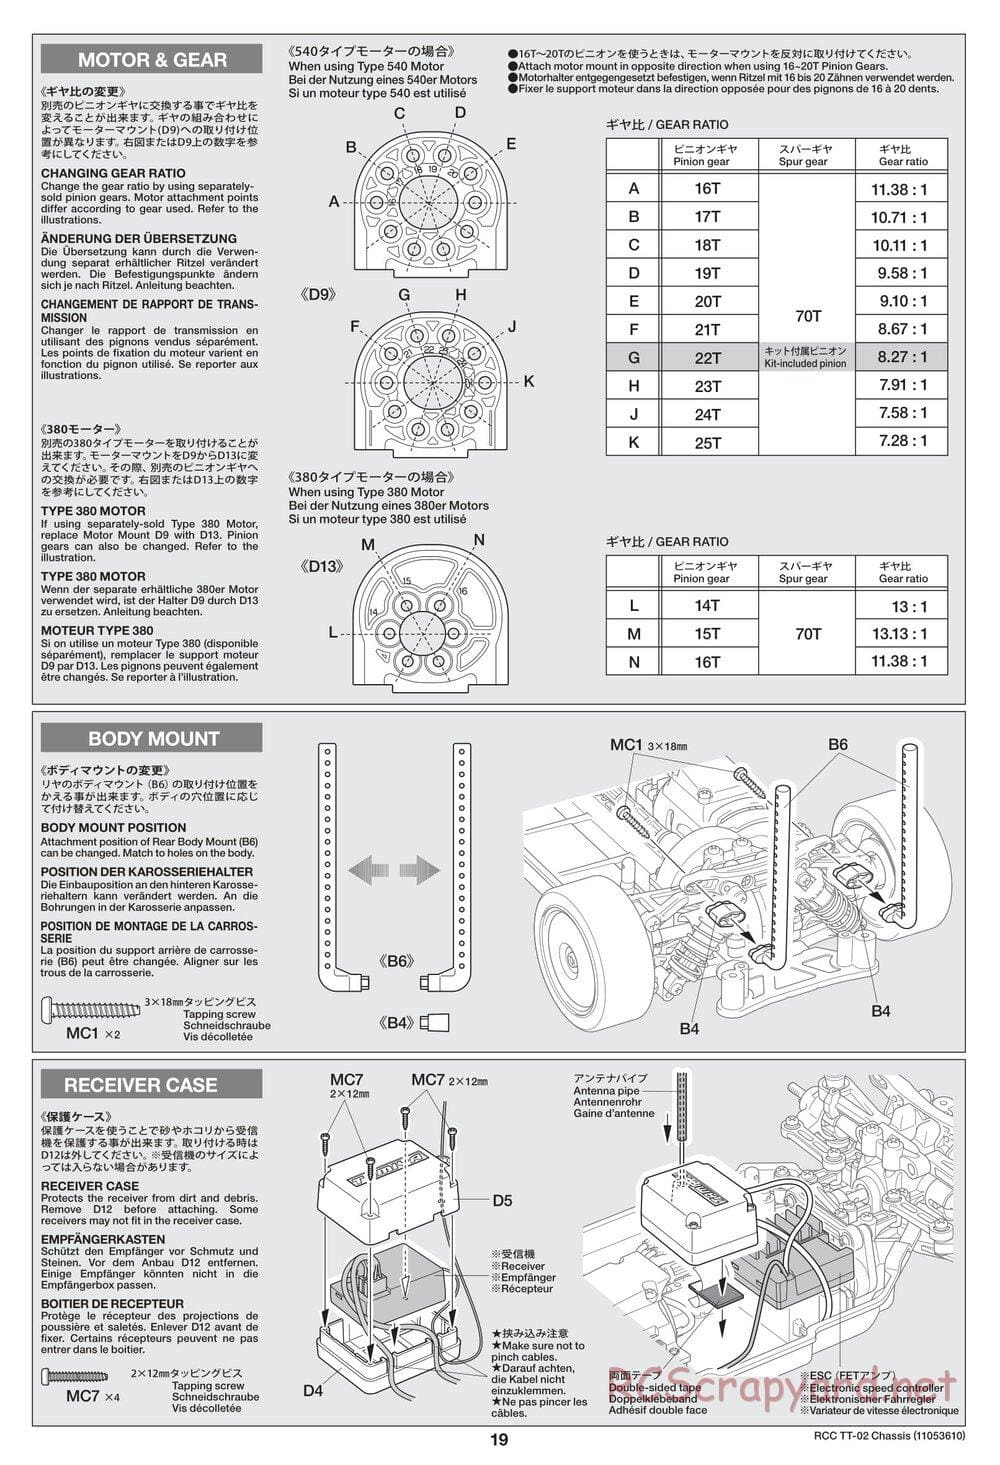 Tamiya - TT-02 Chassis - Manual - Page 19